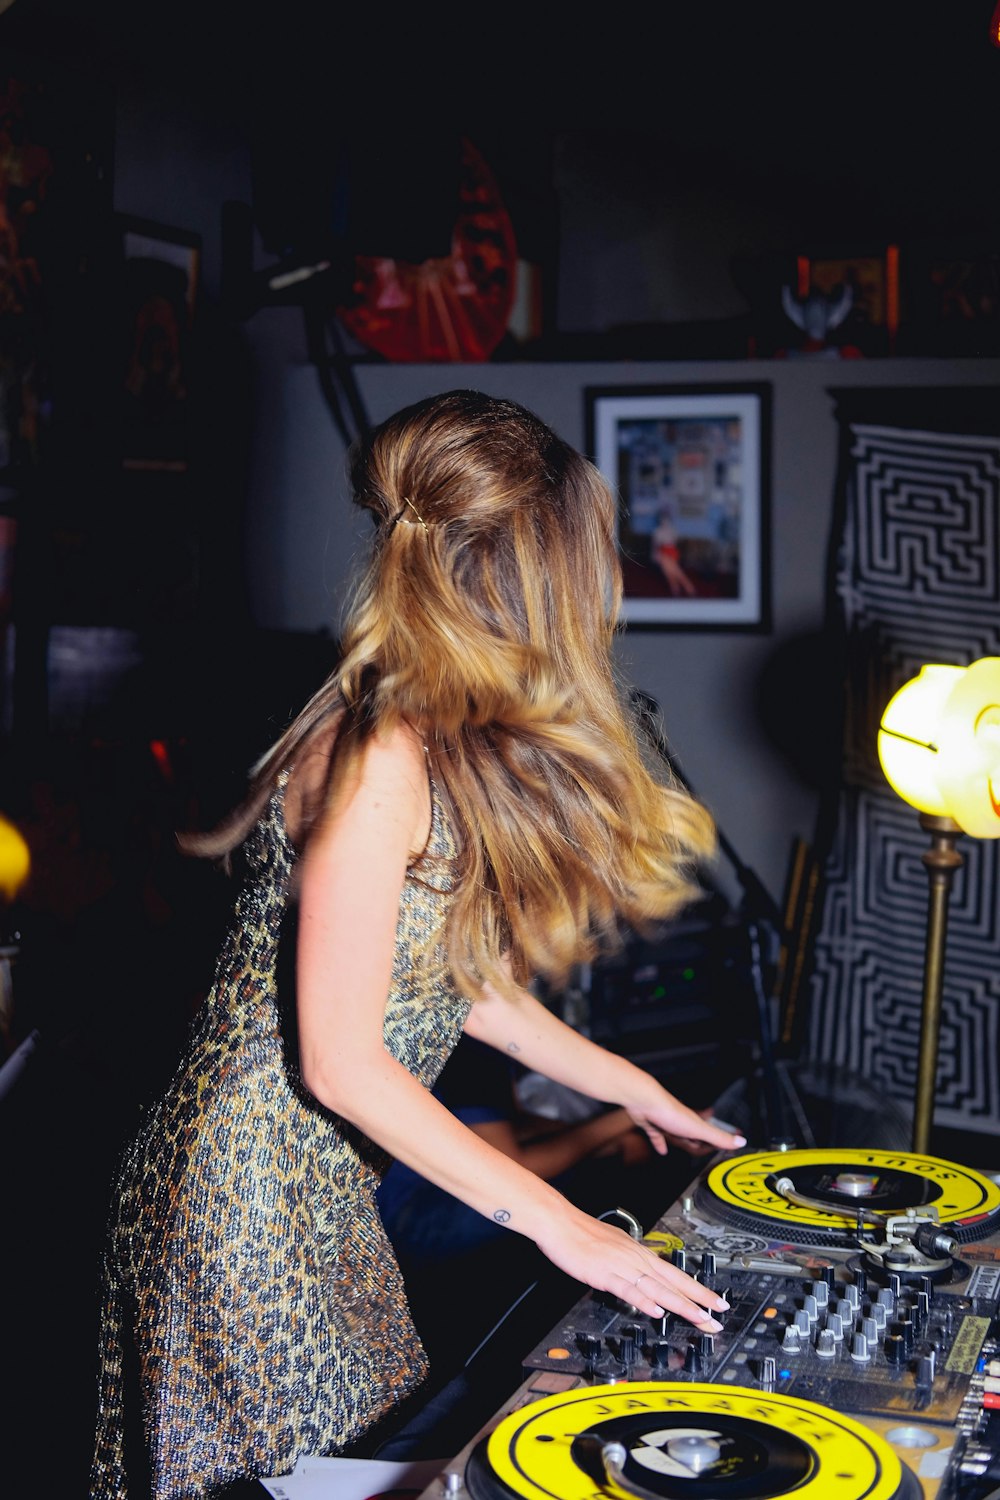 femme jouant au mixeur la nuit